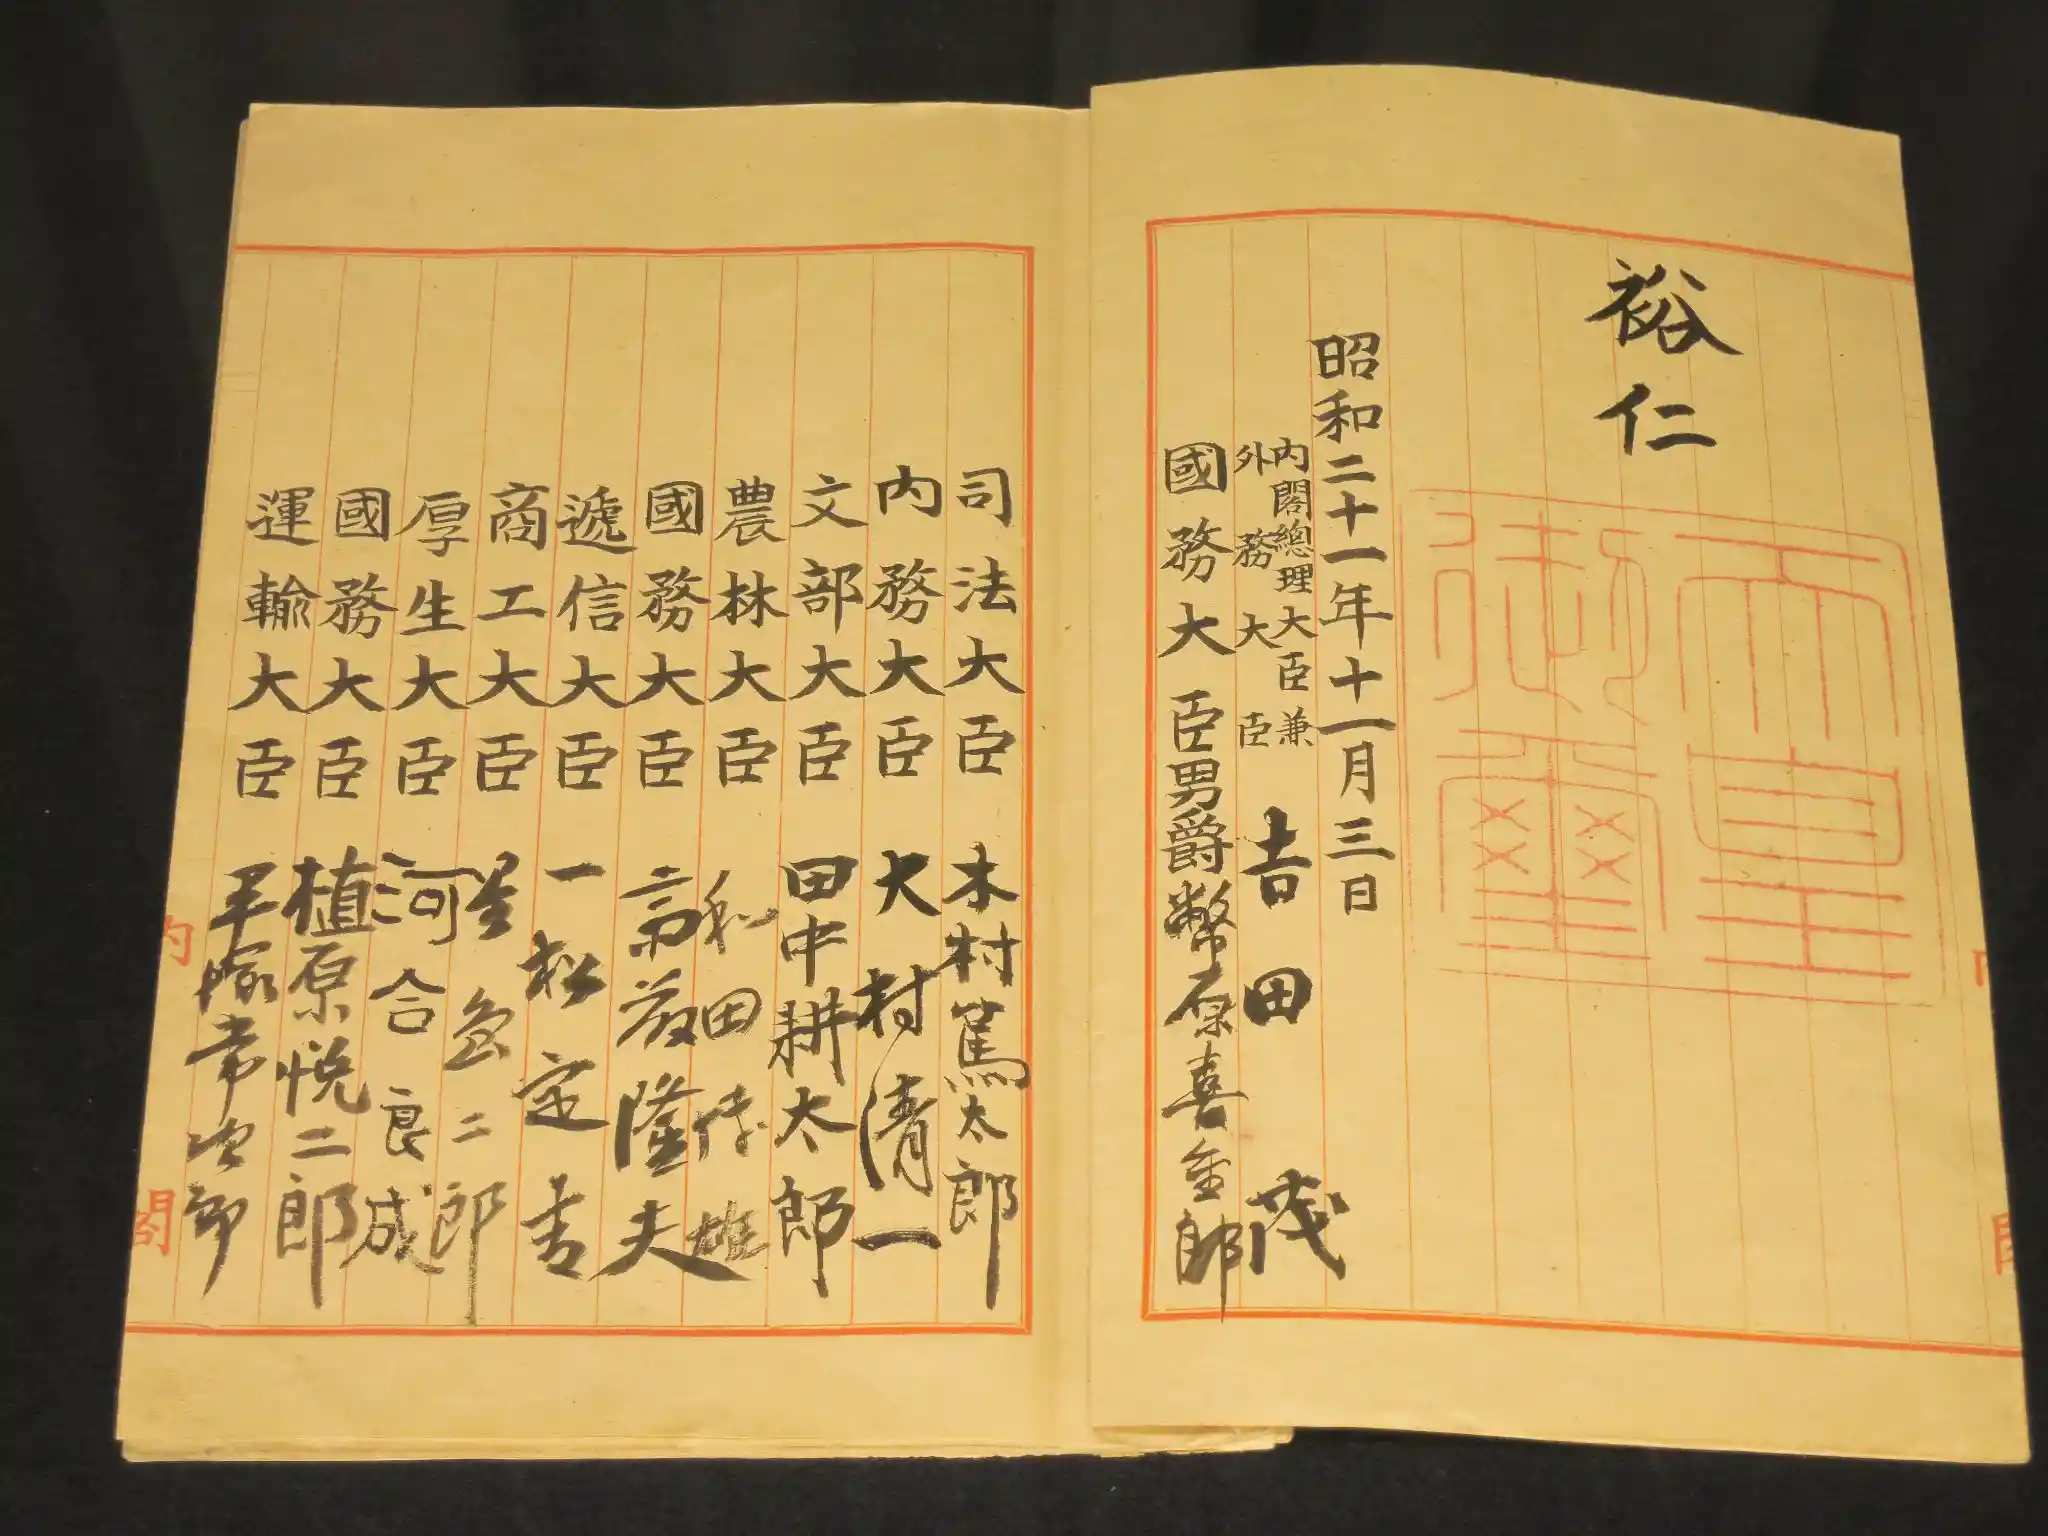 日本國憲法の原本。公布当時の天皇による御名御璽と大臣らによる署名がされている。